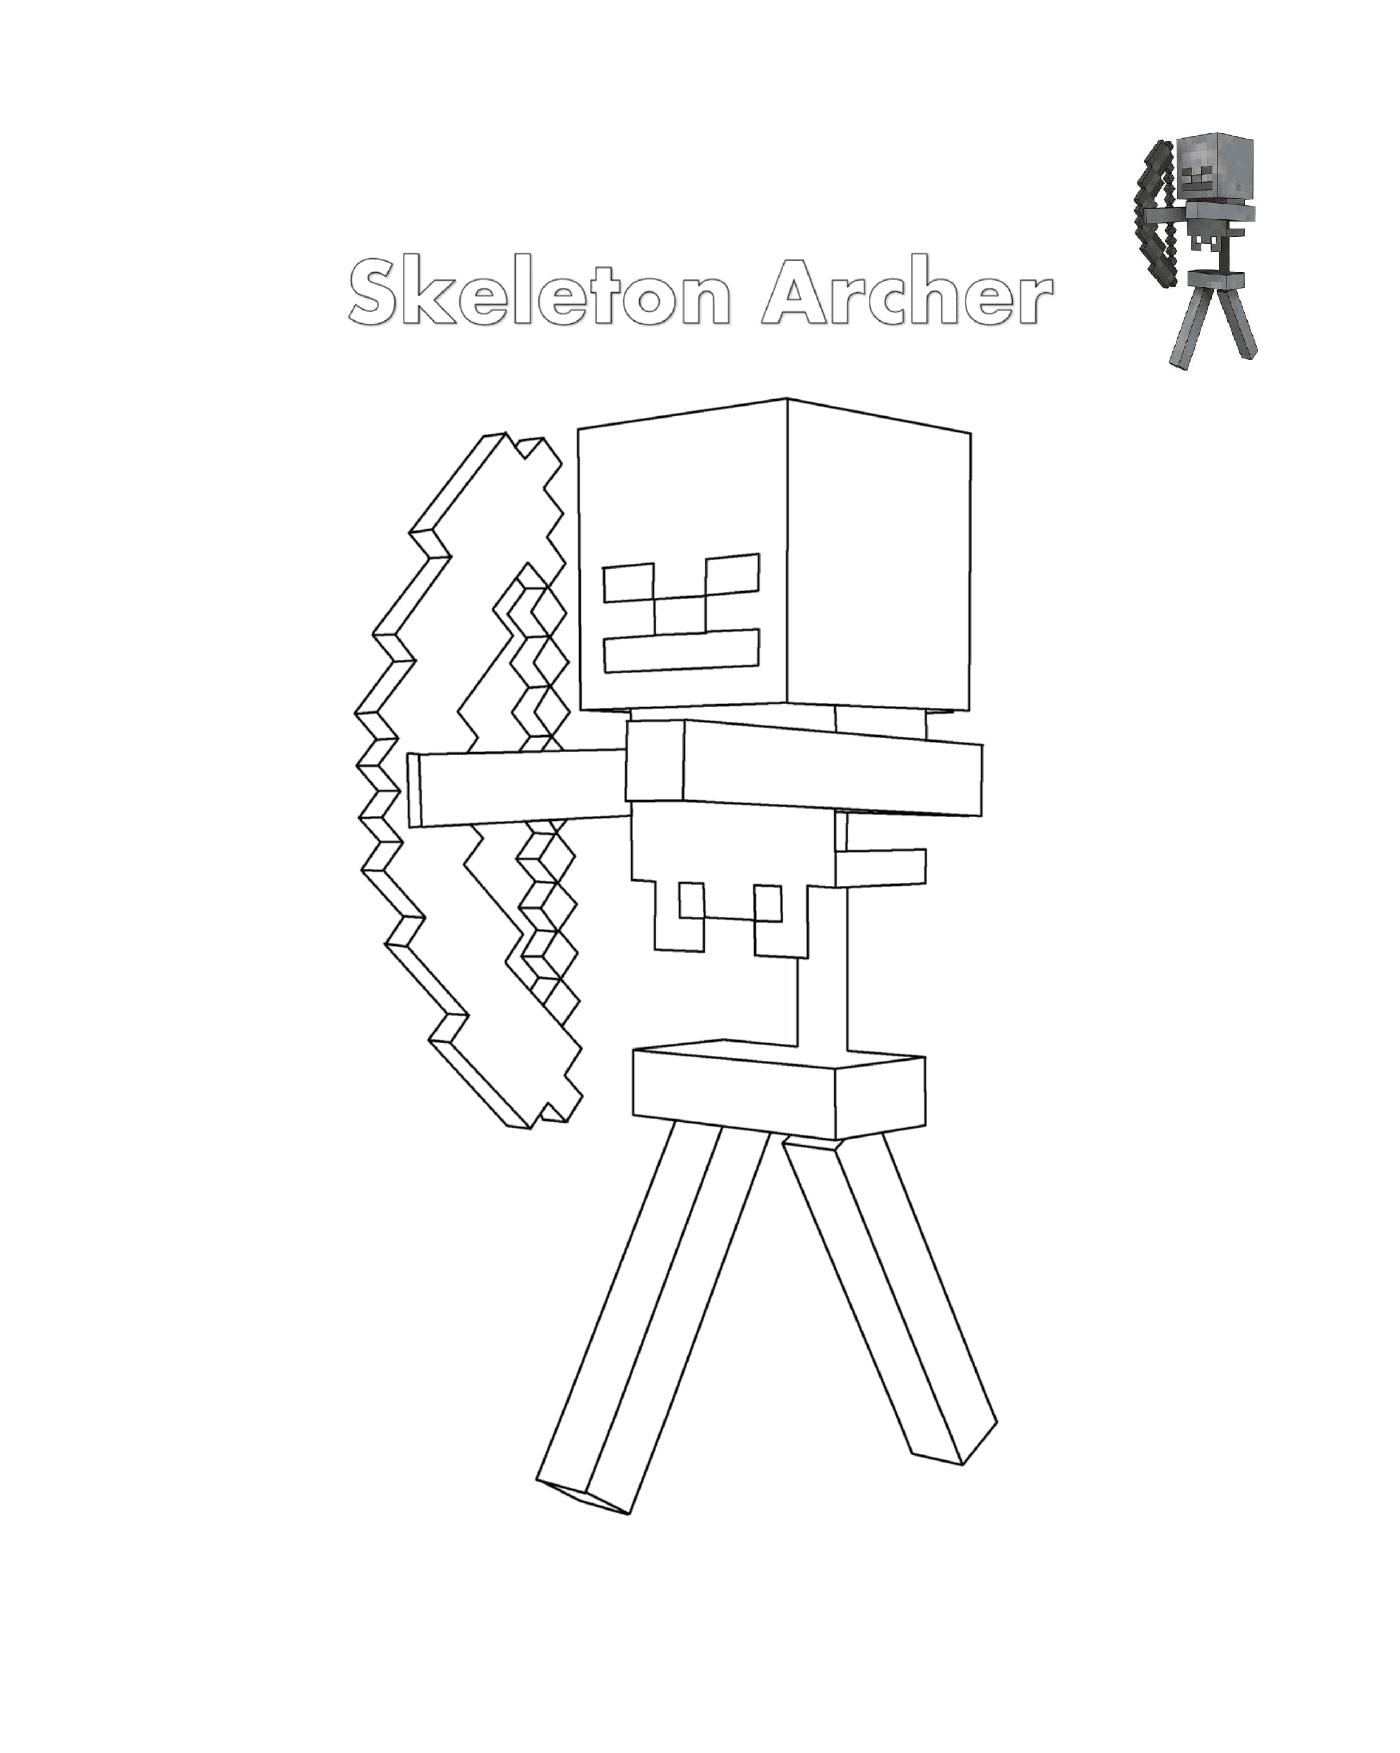  Skelett Archer Minecraft: ein Bogenschützenskelett 